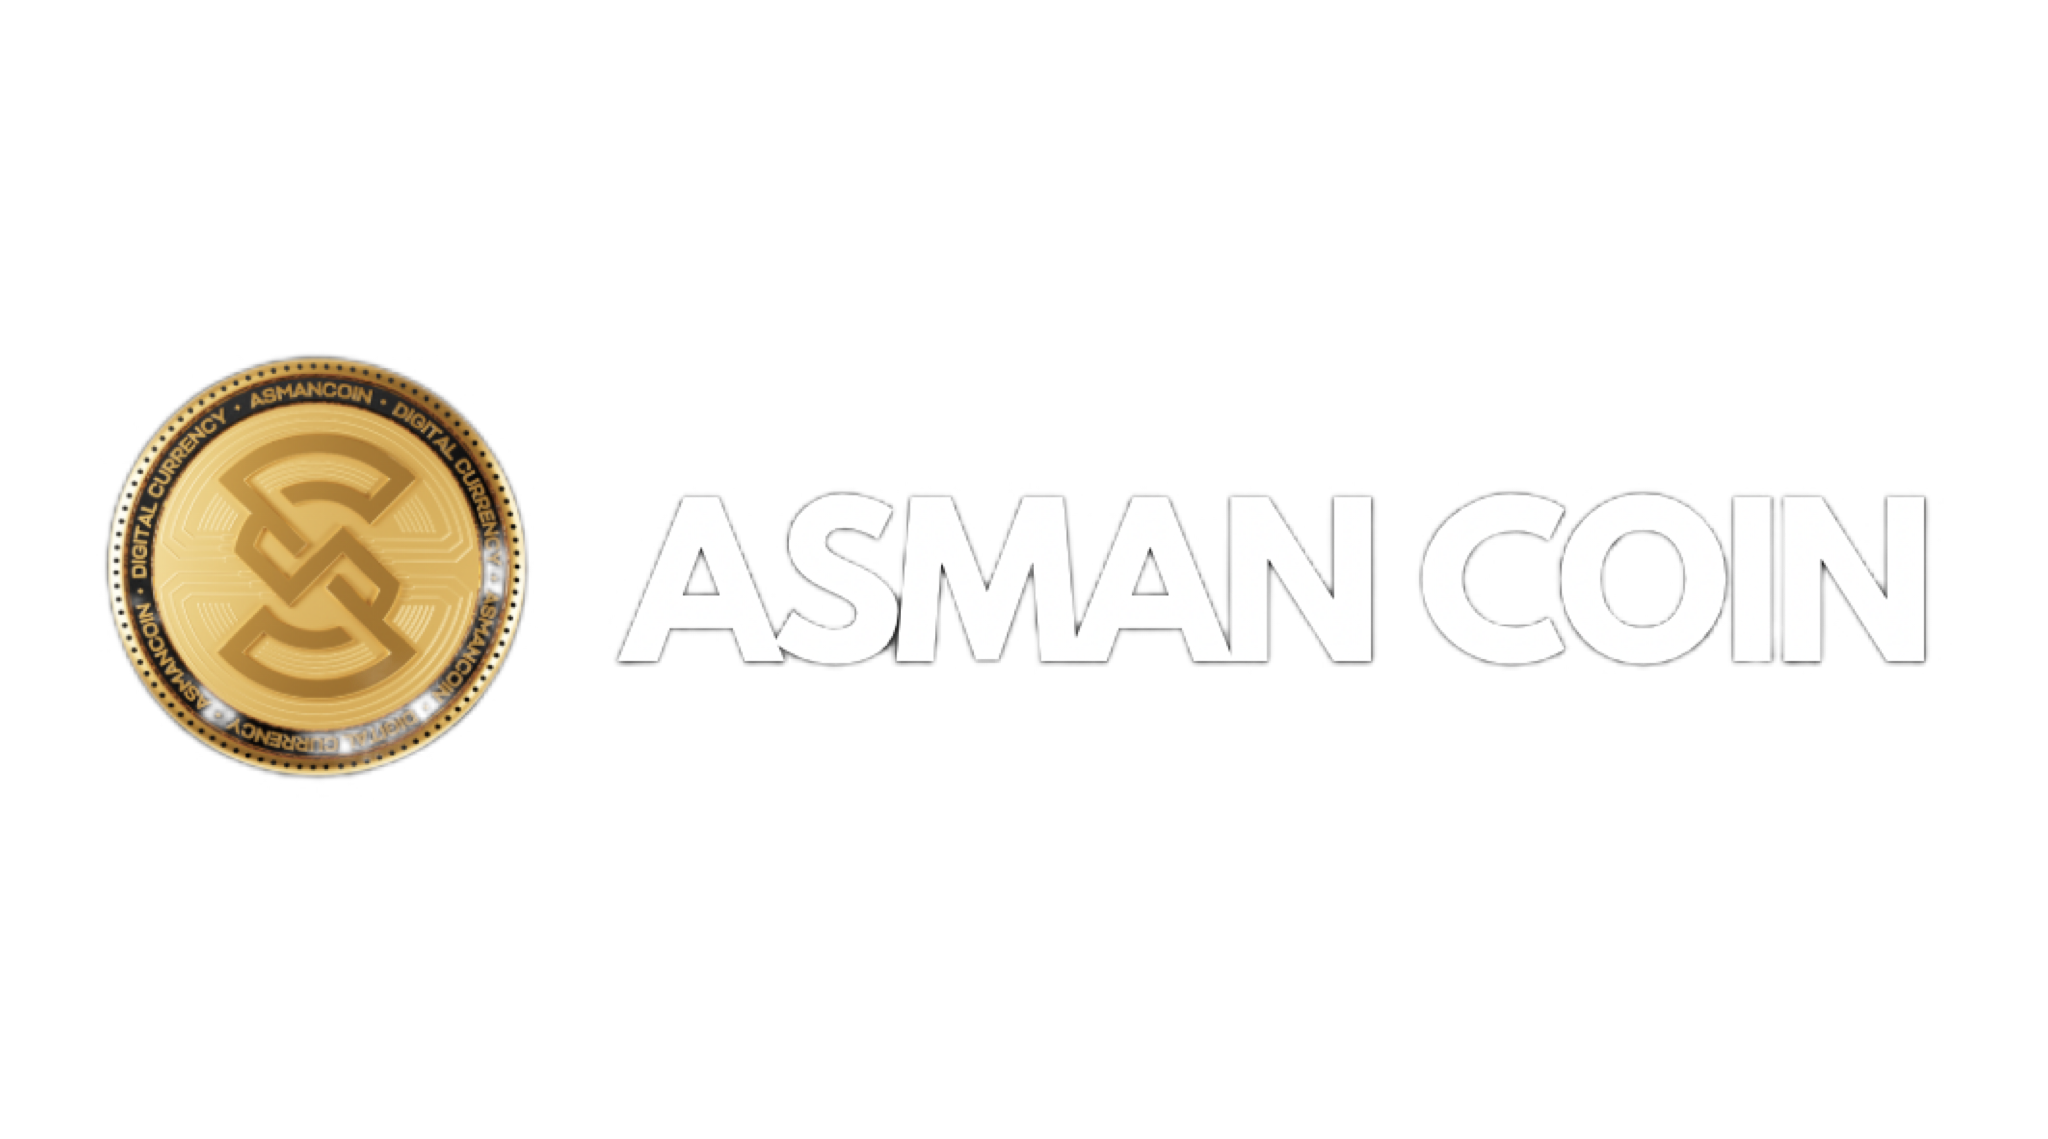 Asman Coin